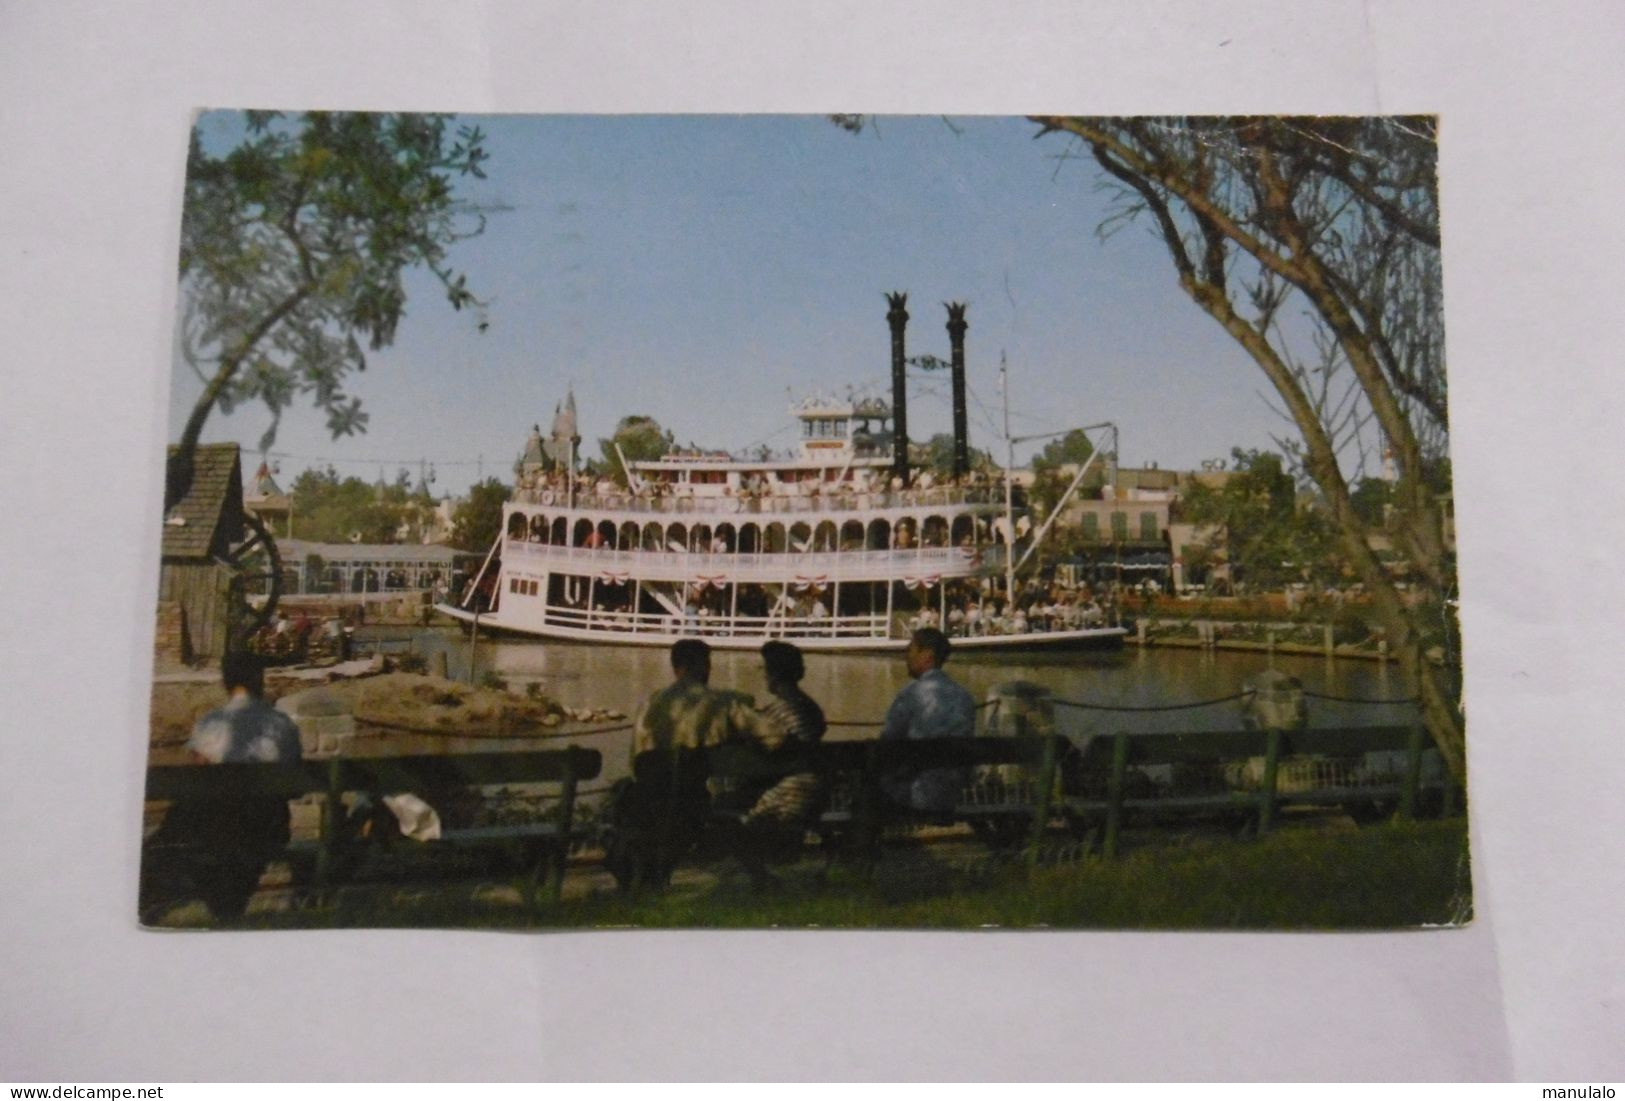 Anaheim - Disneyland - Mark Twain In Frontierland - Anaheim